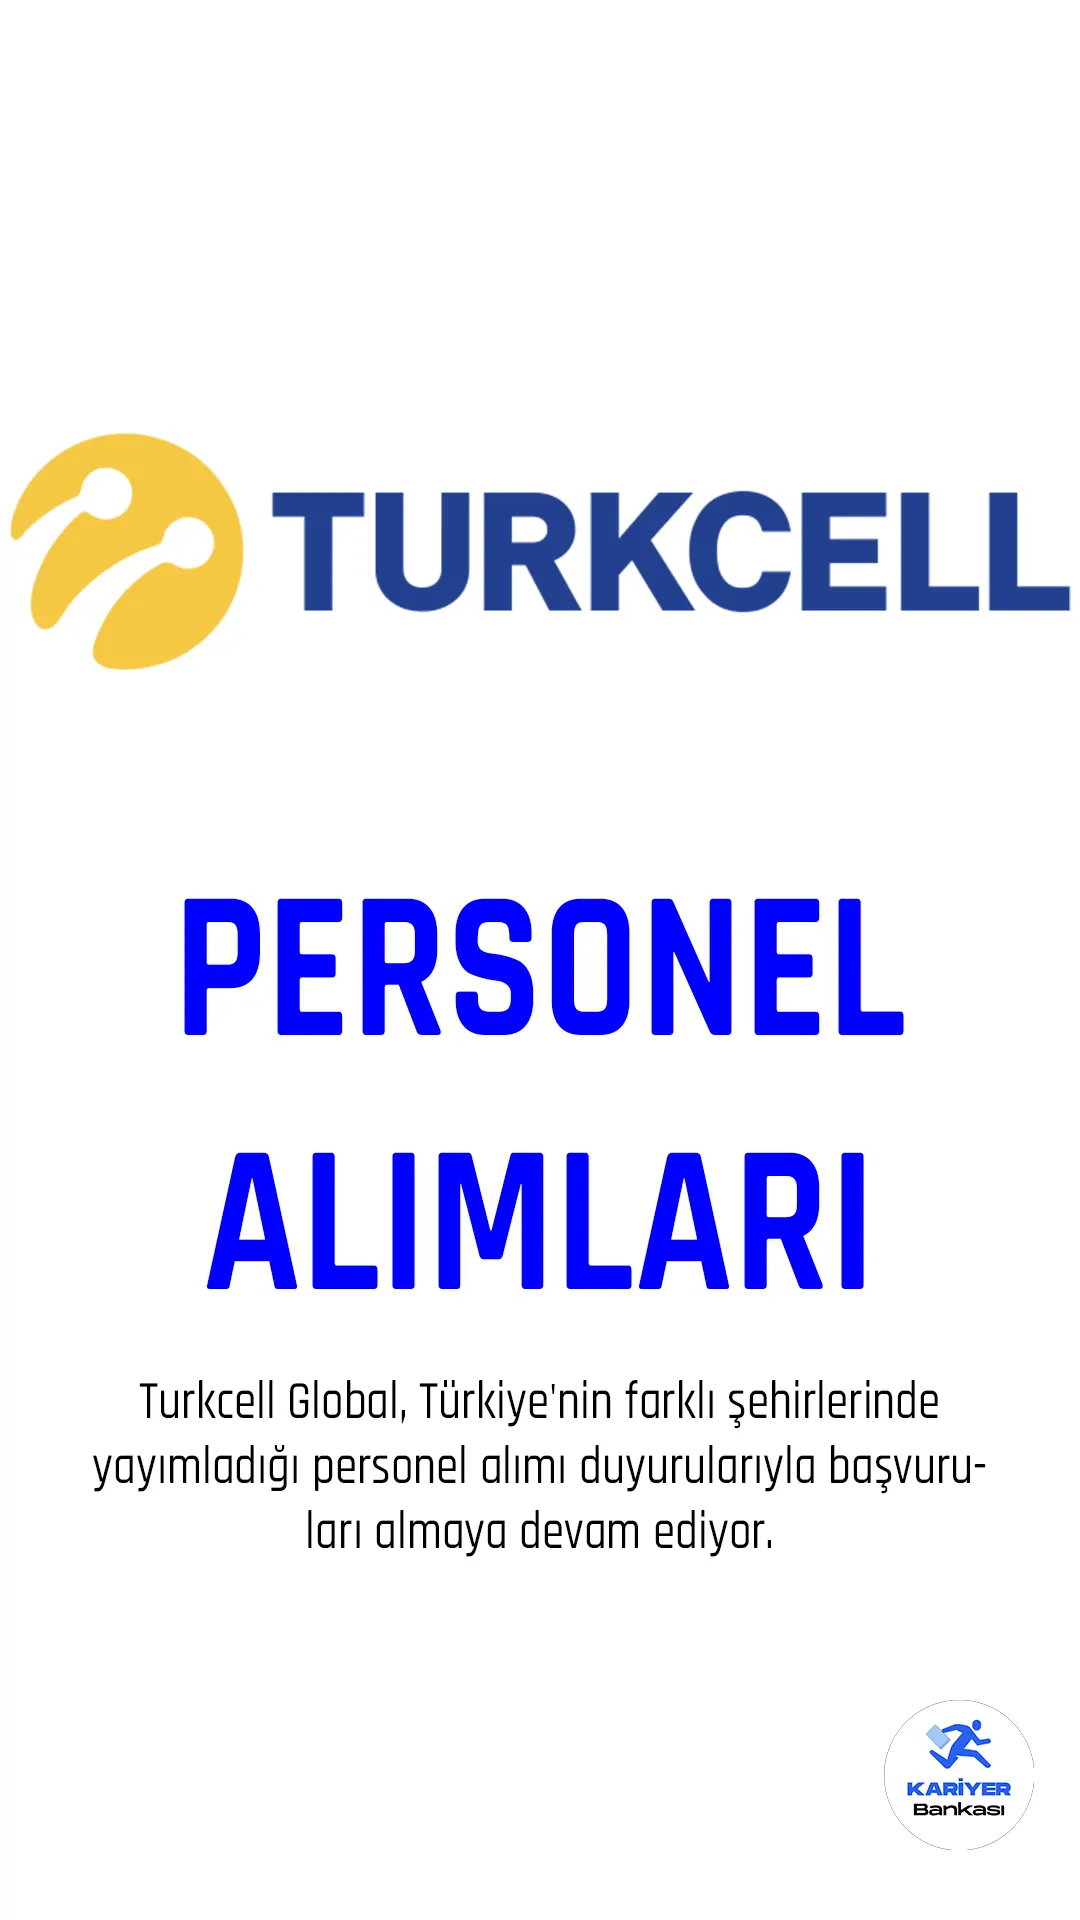 Turkcell Global, Türkiye'nin farklı şehirlerinde yayımladığı personel alımı duyurularıyla başvuruları almaya devam ediyor.